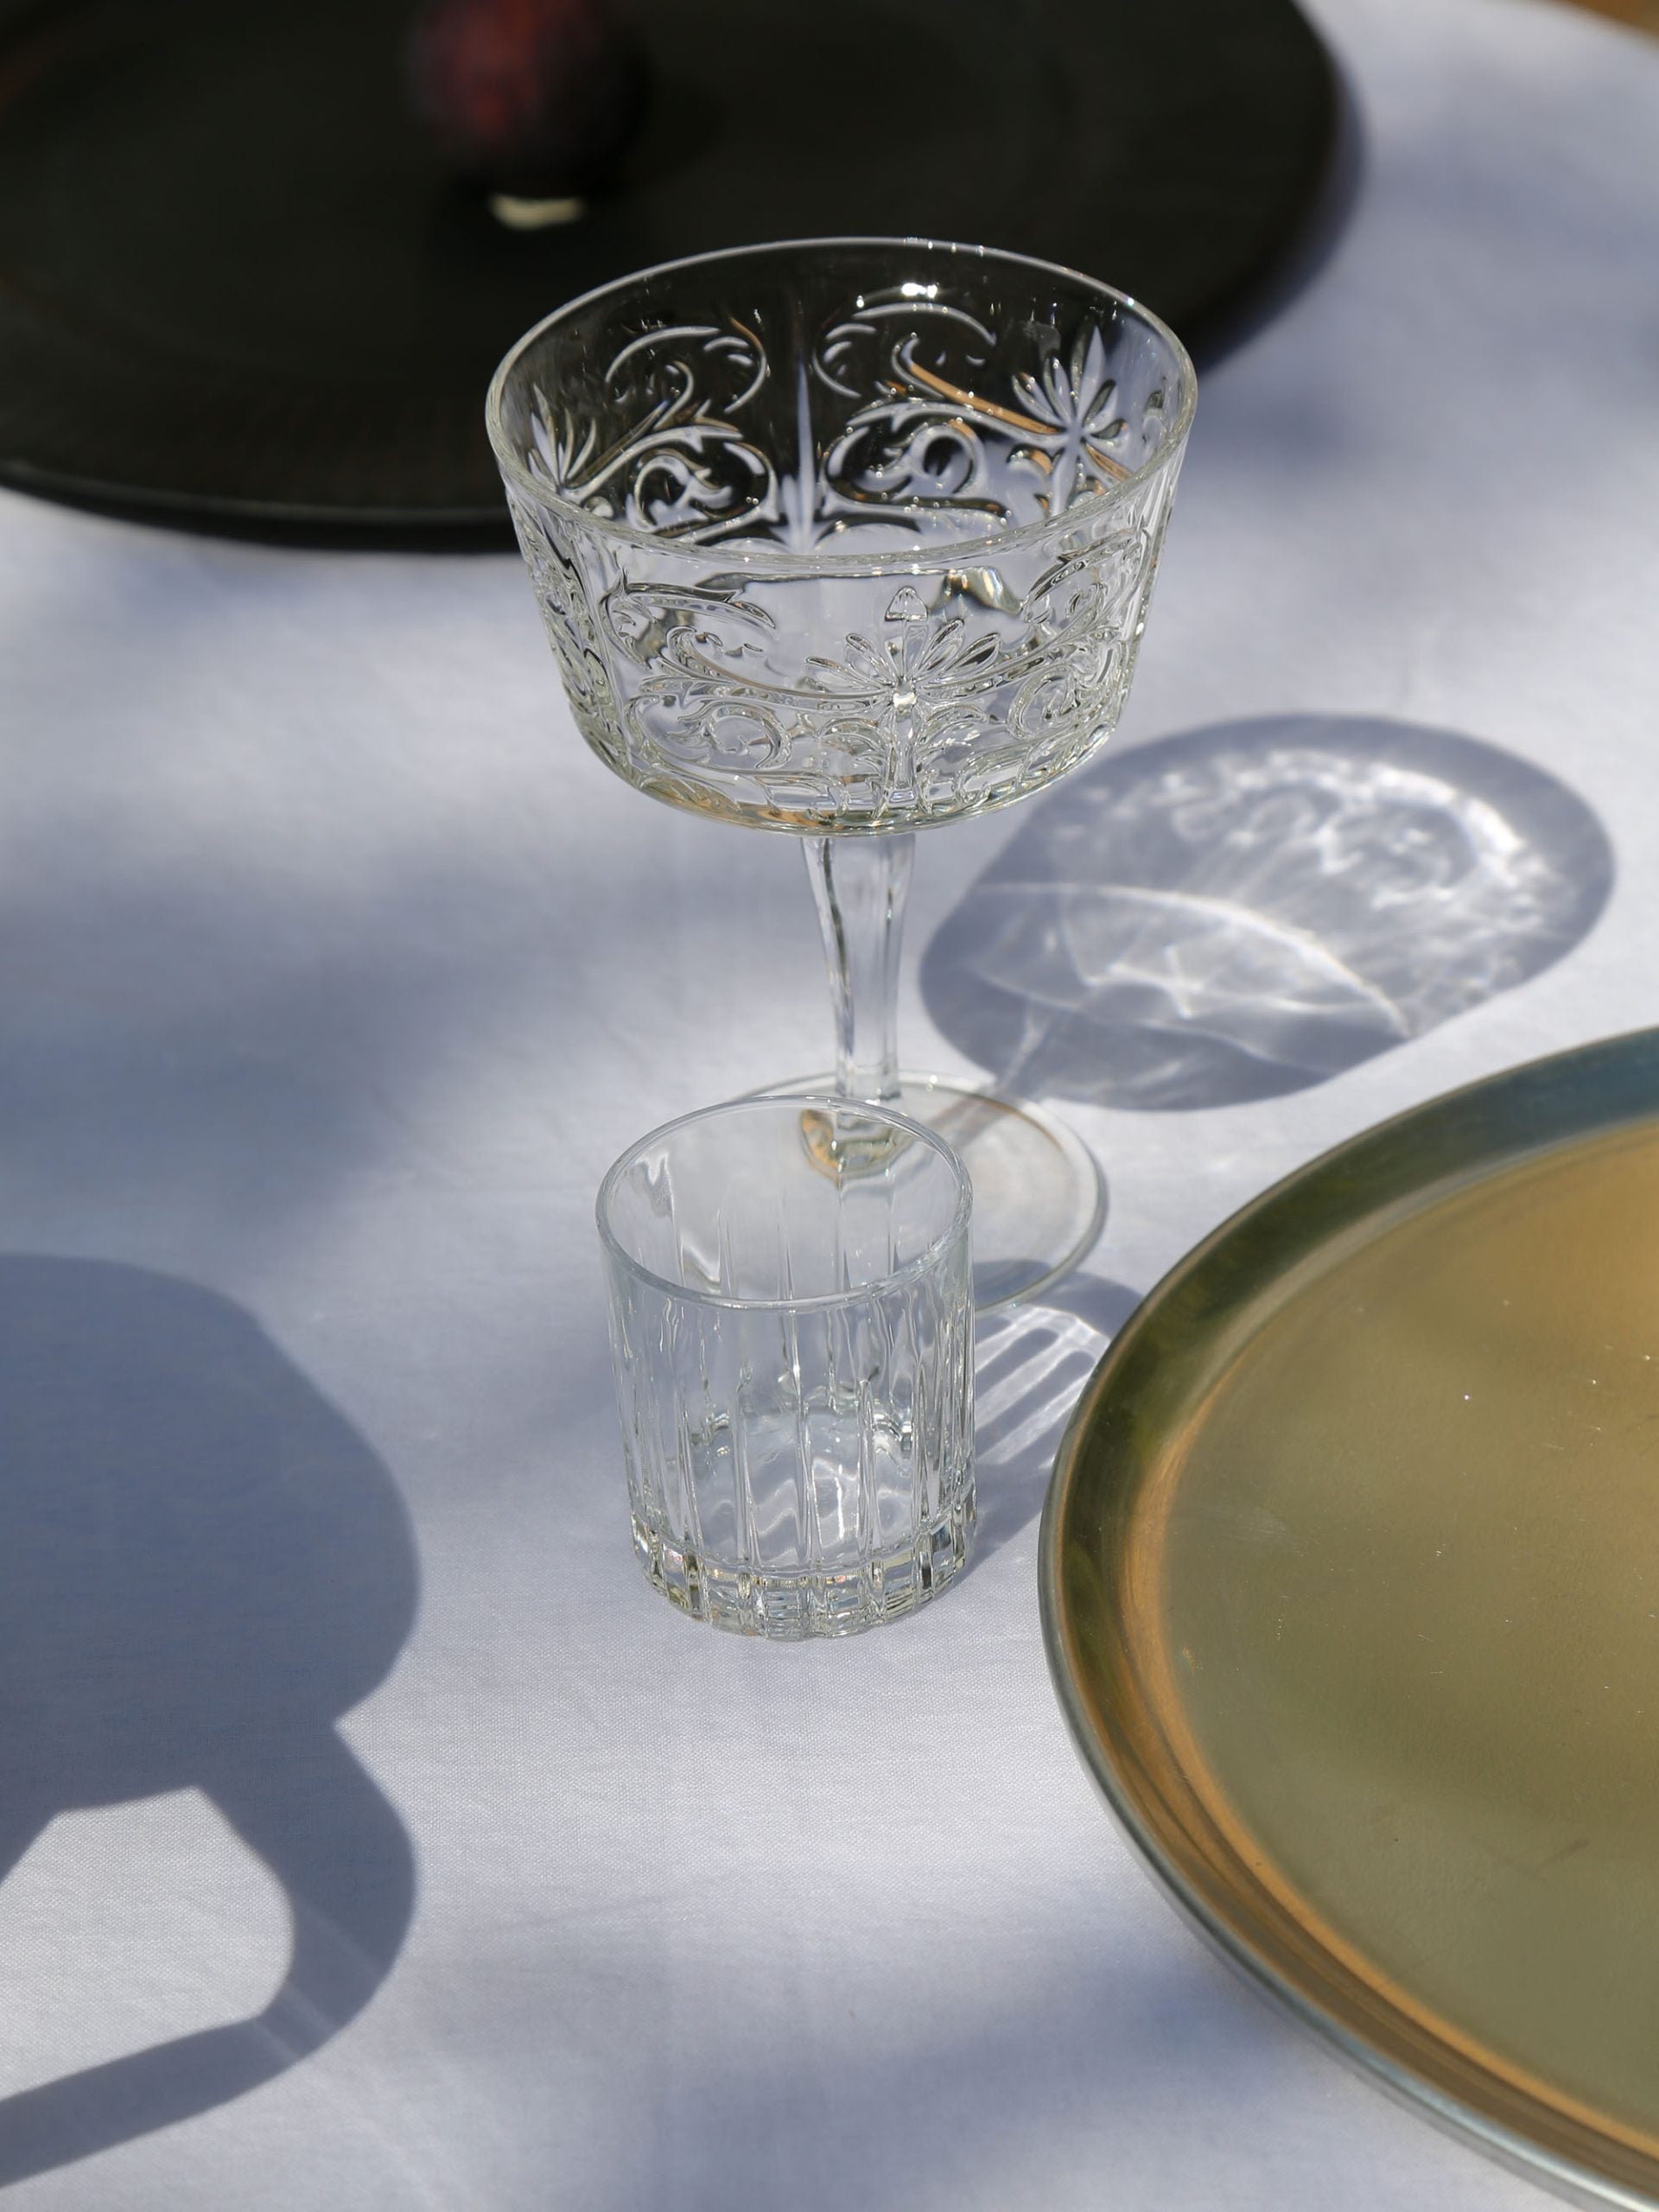 כוס שמפנייה וכוס מים מזכוכית ליד צלחת מעוצבת על שולחן ערוך עם מפה לבנה 